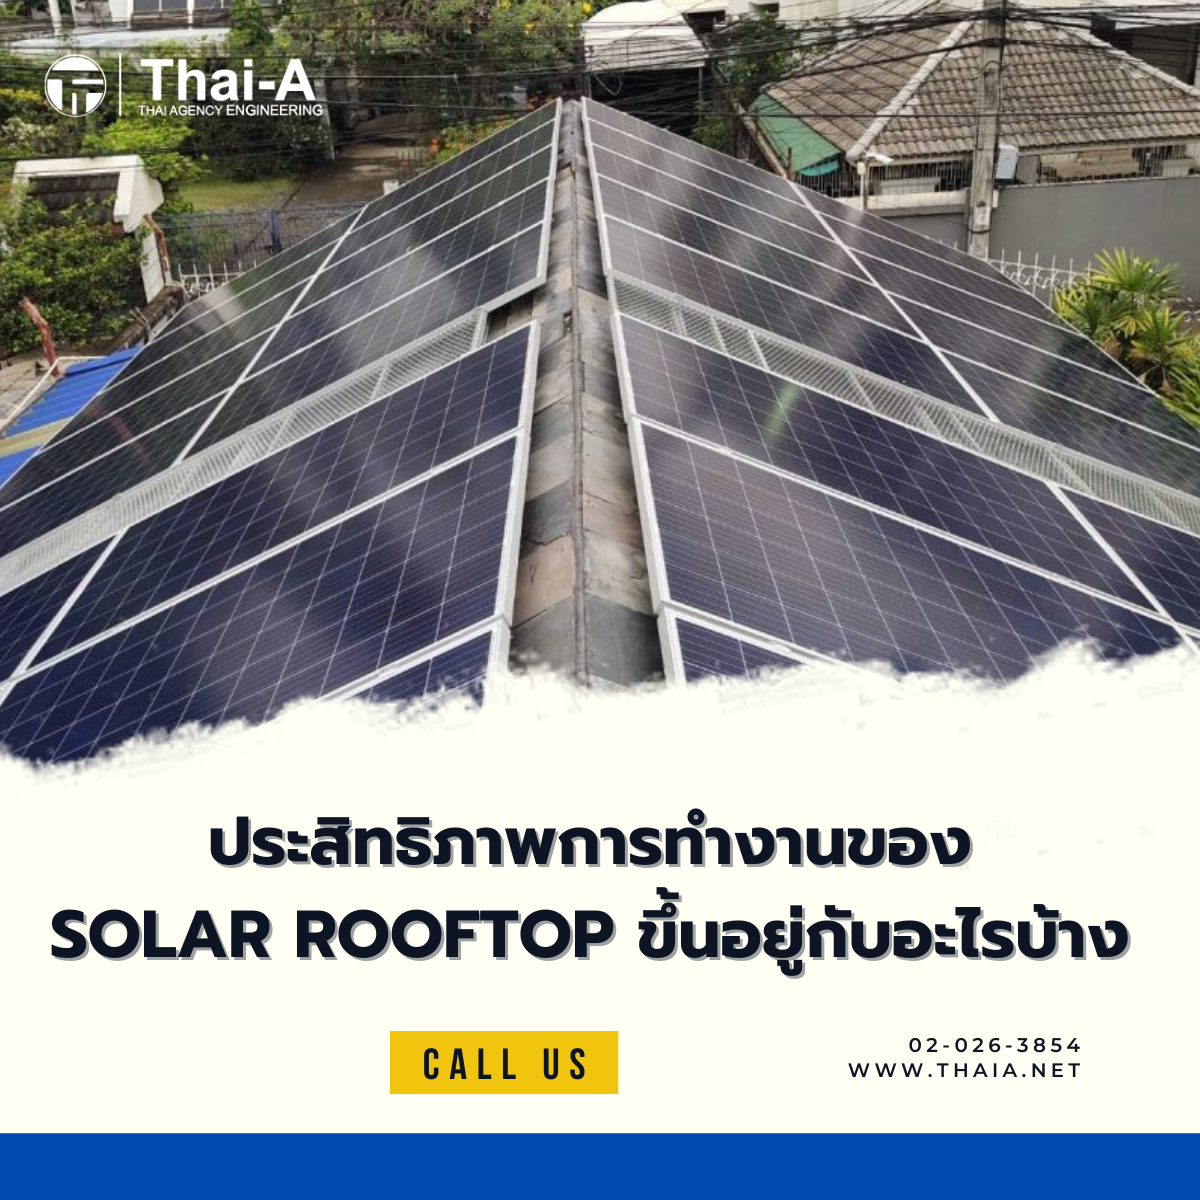 ประสิทธิภาพการทำงานของ Solar Rooftop ขึ้นอยู่กับอะไรบ้าง